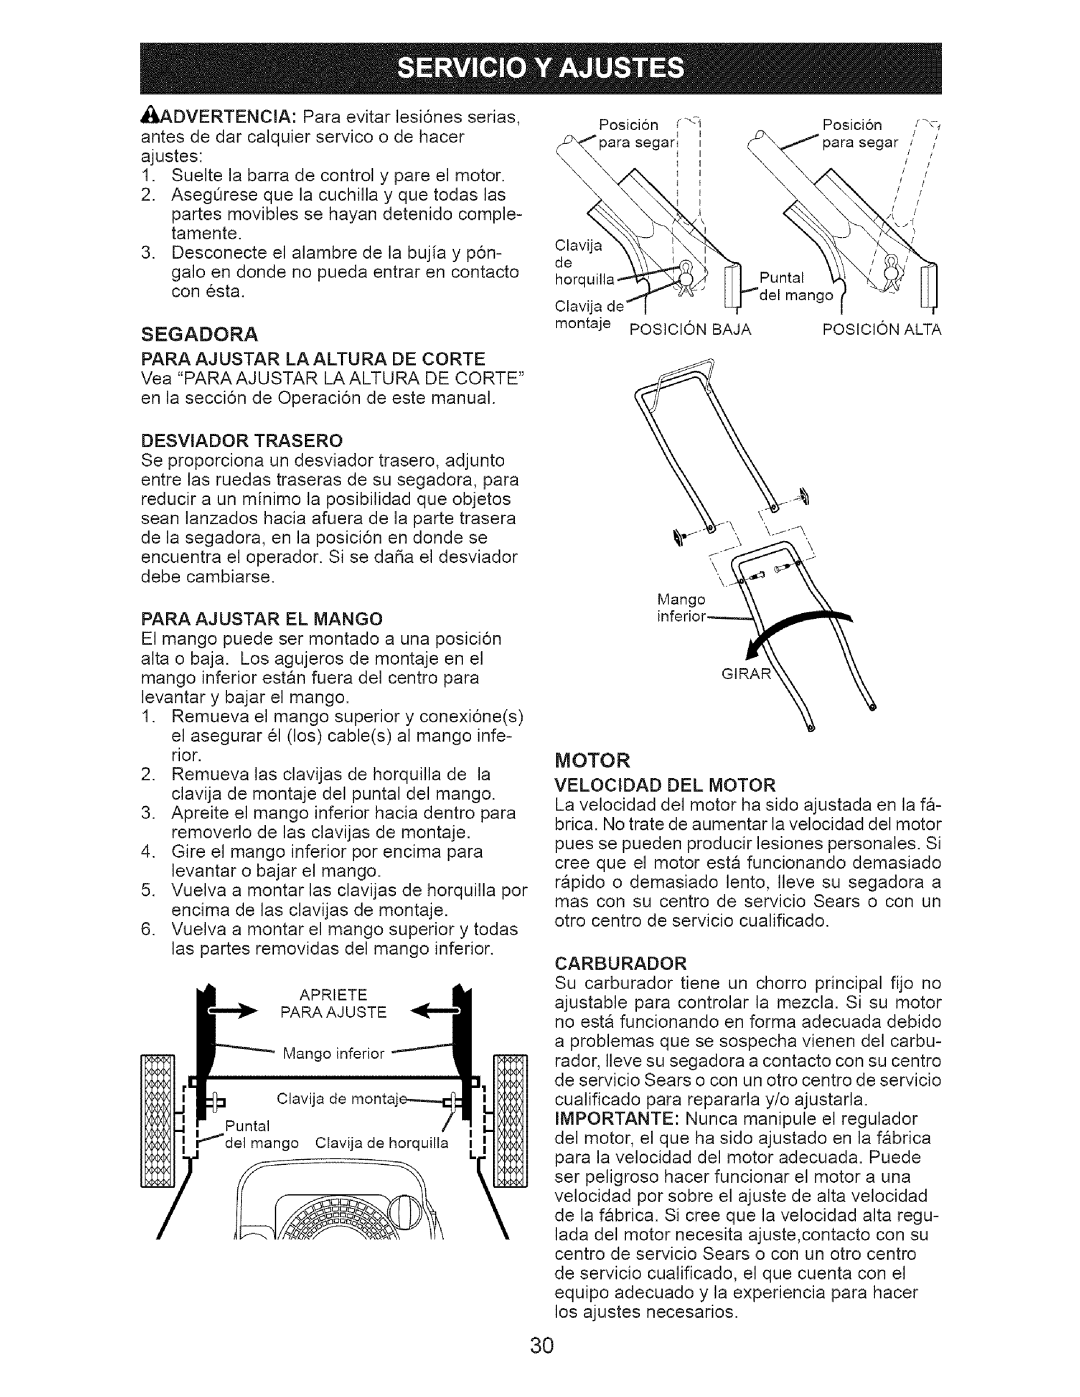 Craftsman 917.3882 owner manual Sueltela barrade controly pareel motor 